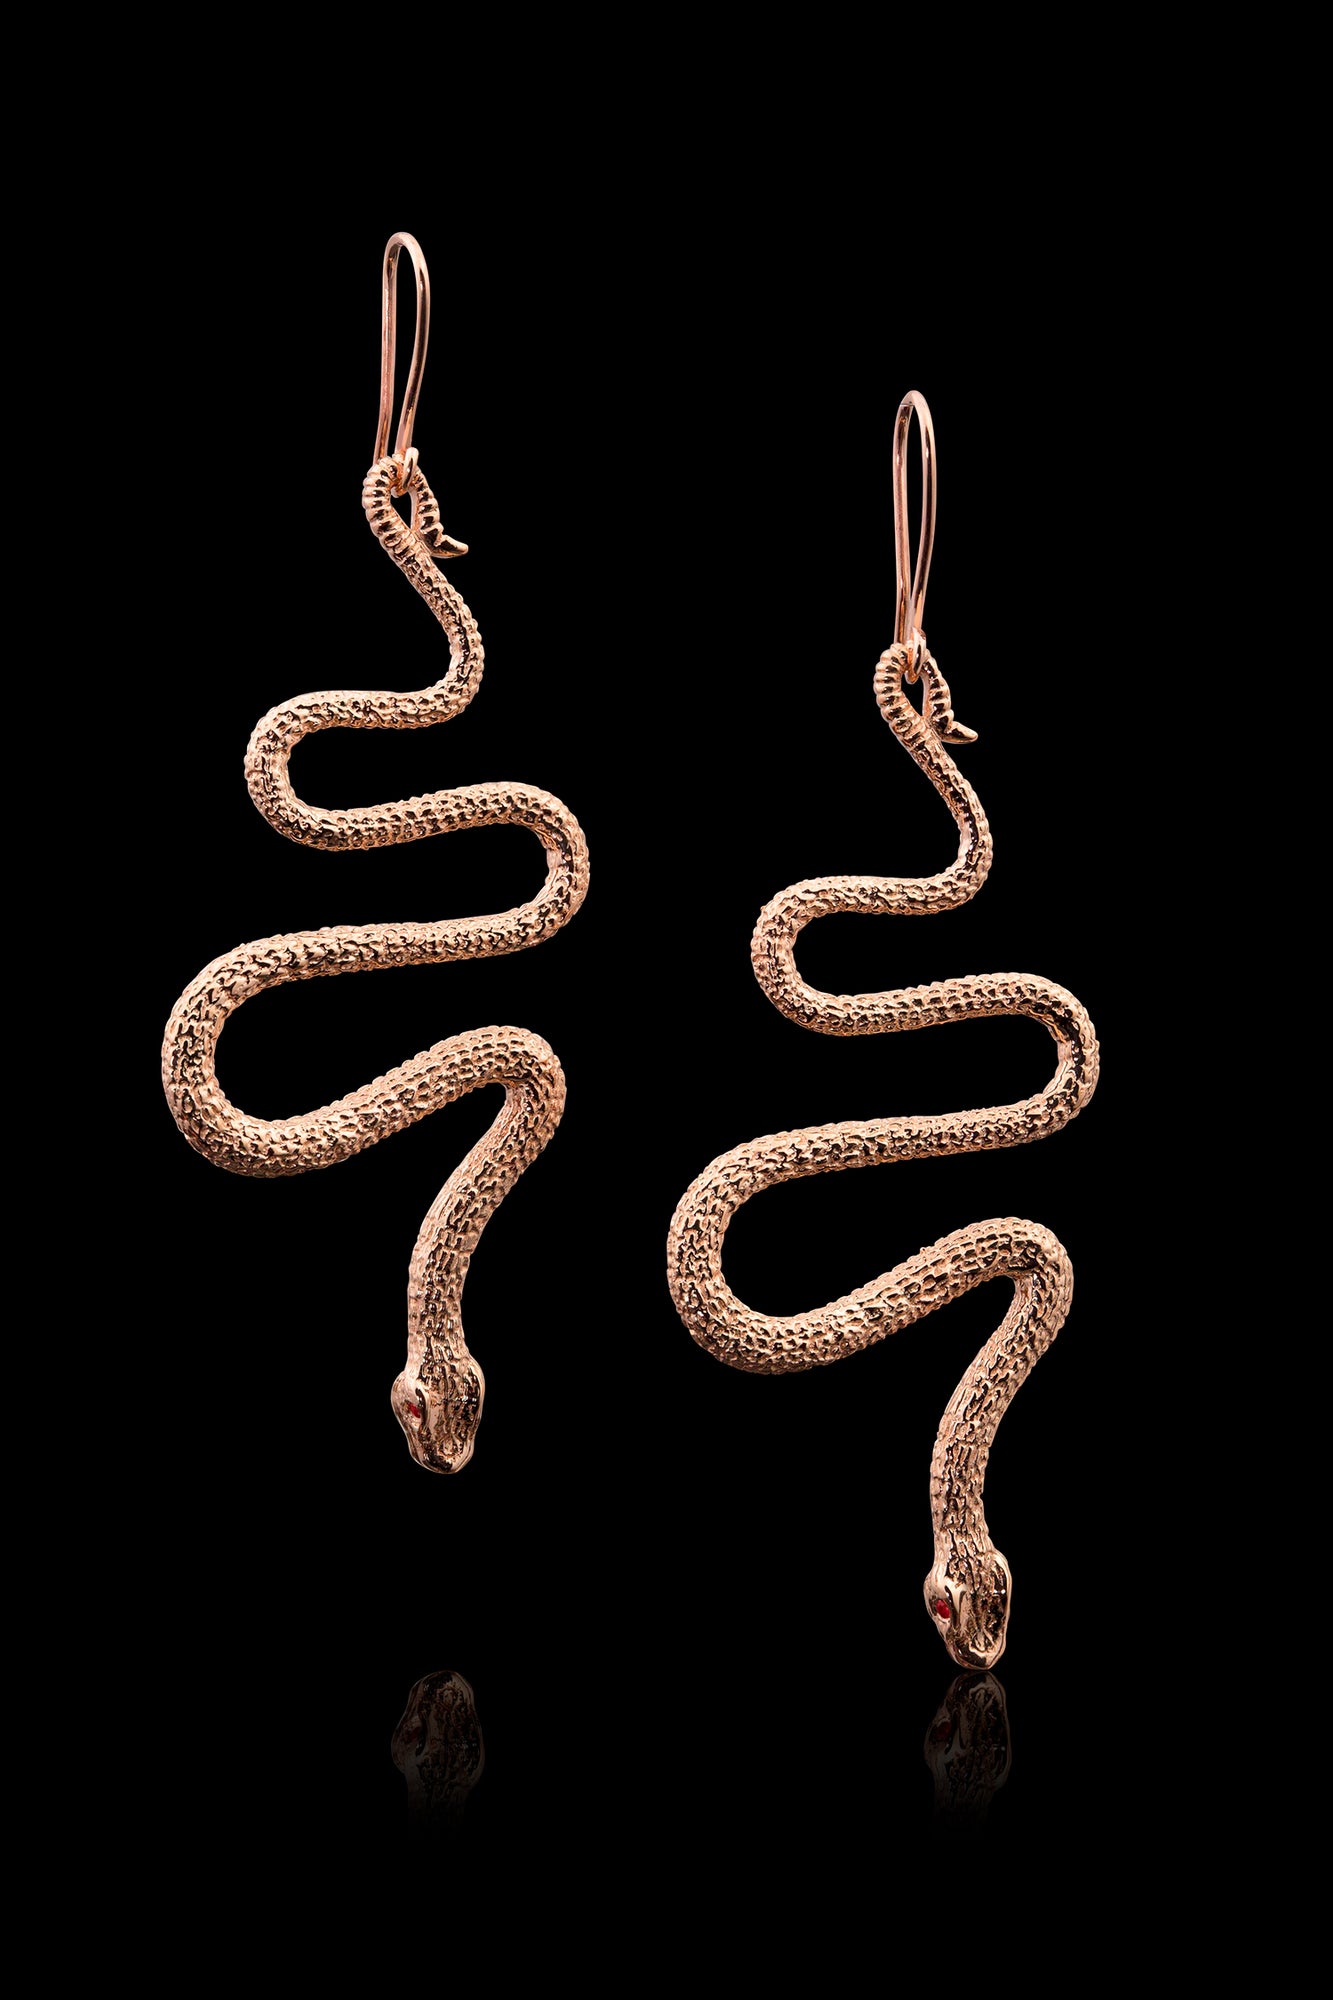 Amazon.com: SLUYNZ S925 Sterling Silver Punk Snake Stud Earrings for Women  Men Teen Girls Snake Helix Stud Earrings Cartilage Cross Stripe Open Snake  Earrings (A-Silver): Clothing, Shoes & Jewelry